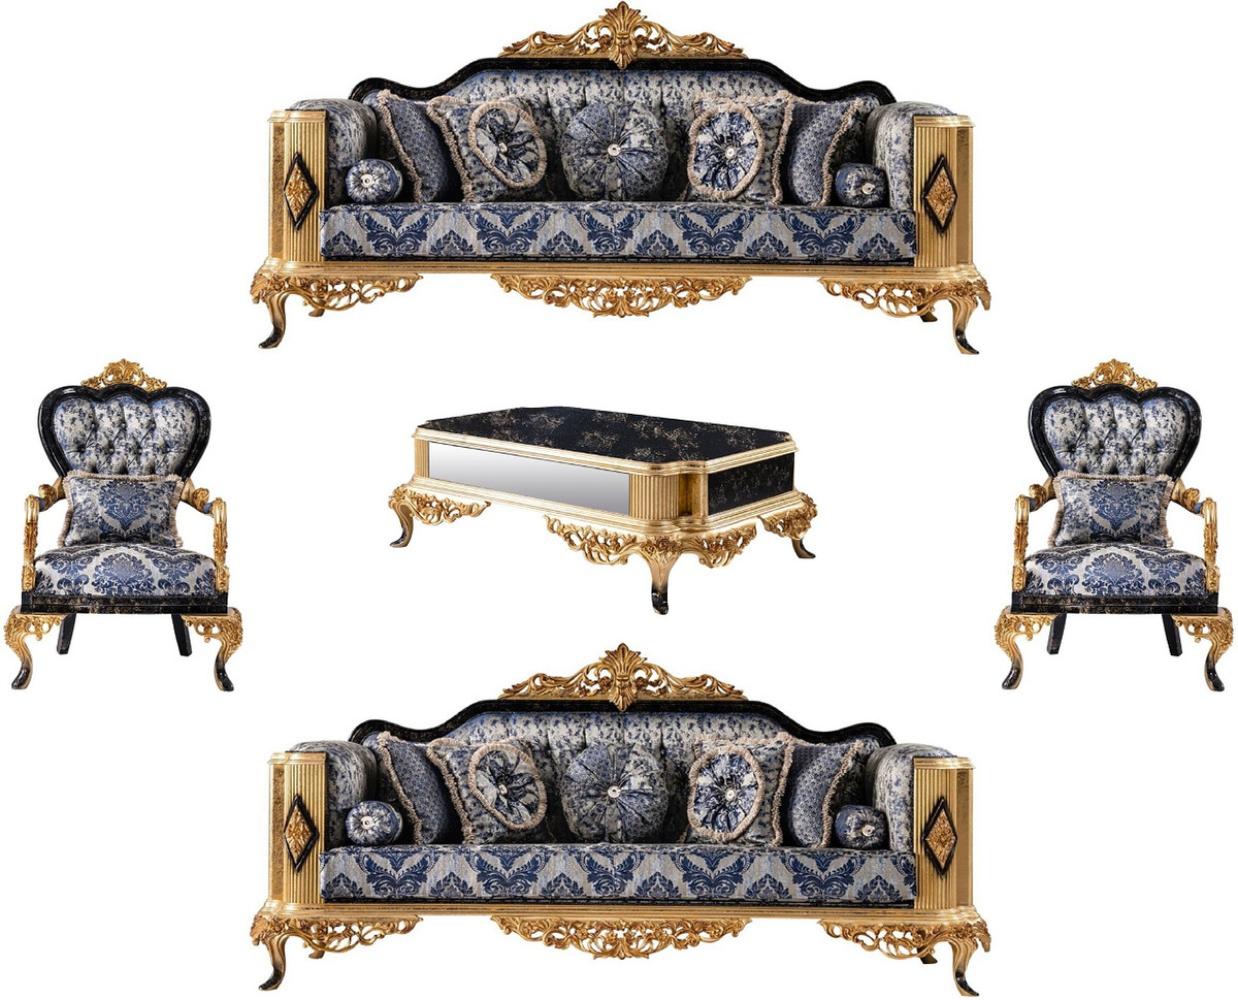 Casa Padrino Luxus Barock Wohnzimmer Set Blau / Schwarz / Gold - 2 Barock Sofas & 2 Barock Sessel & 1 Barock Couchtisch - Luxus Wohnzimmer Möbel im Barockstil - Barock Möbel - Edel & Prunkvoll Bild 1